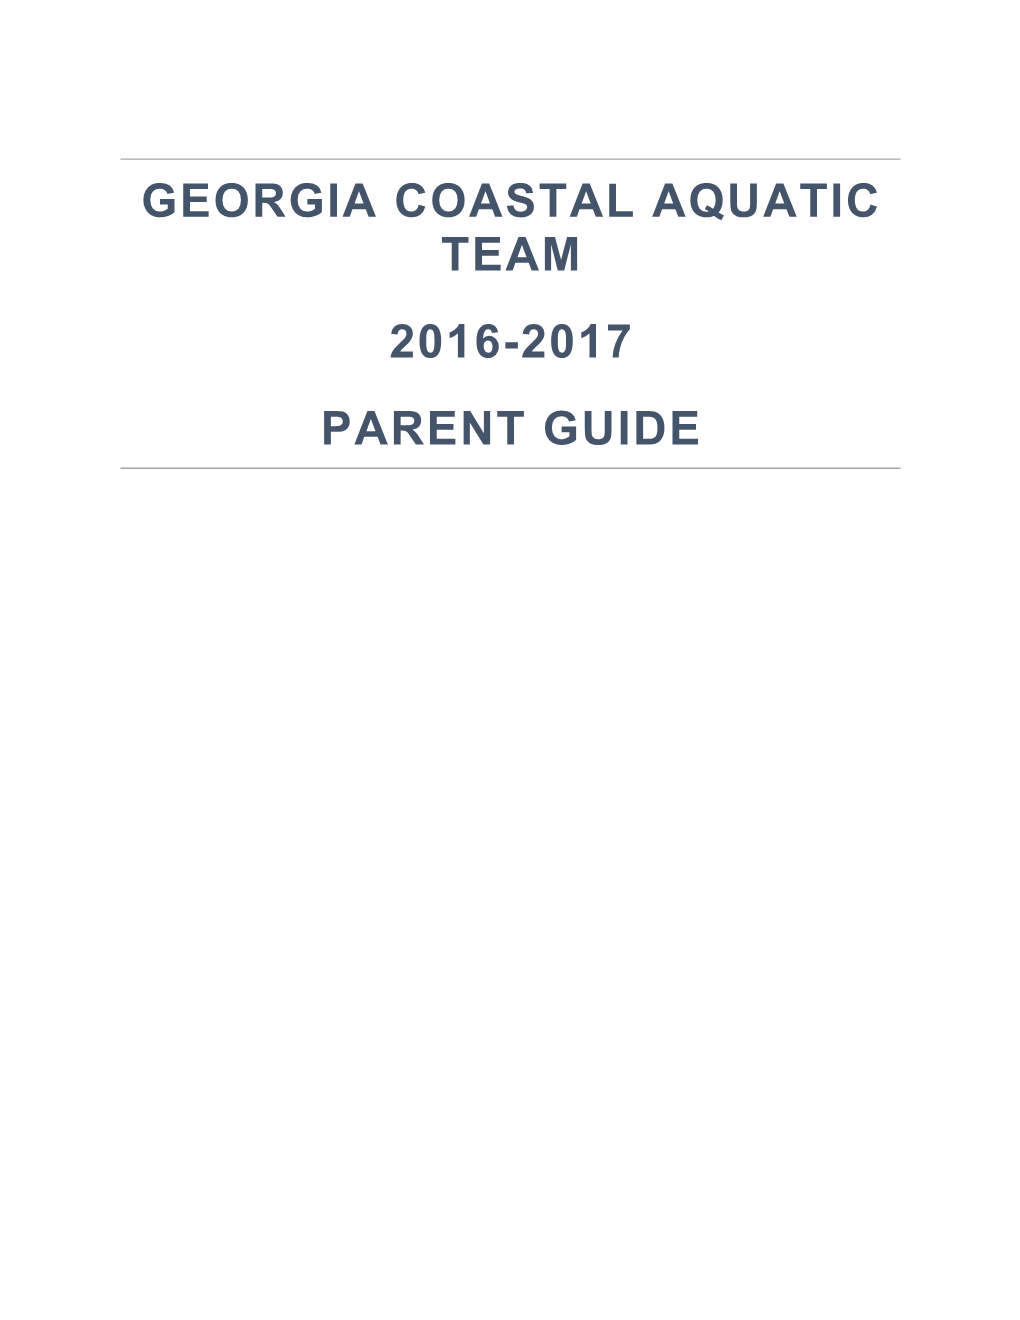 Georgia Coastal Aquatic Team